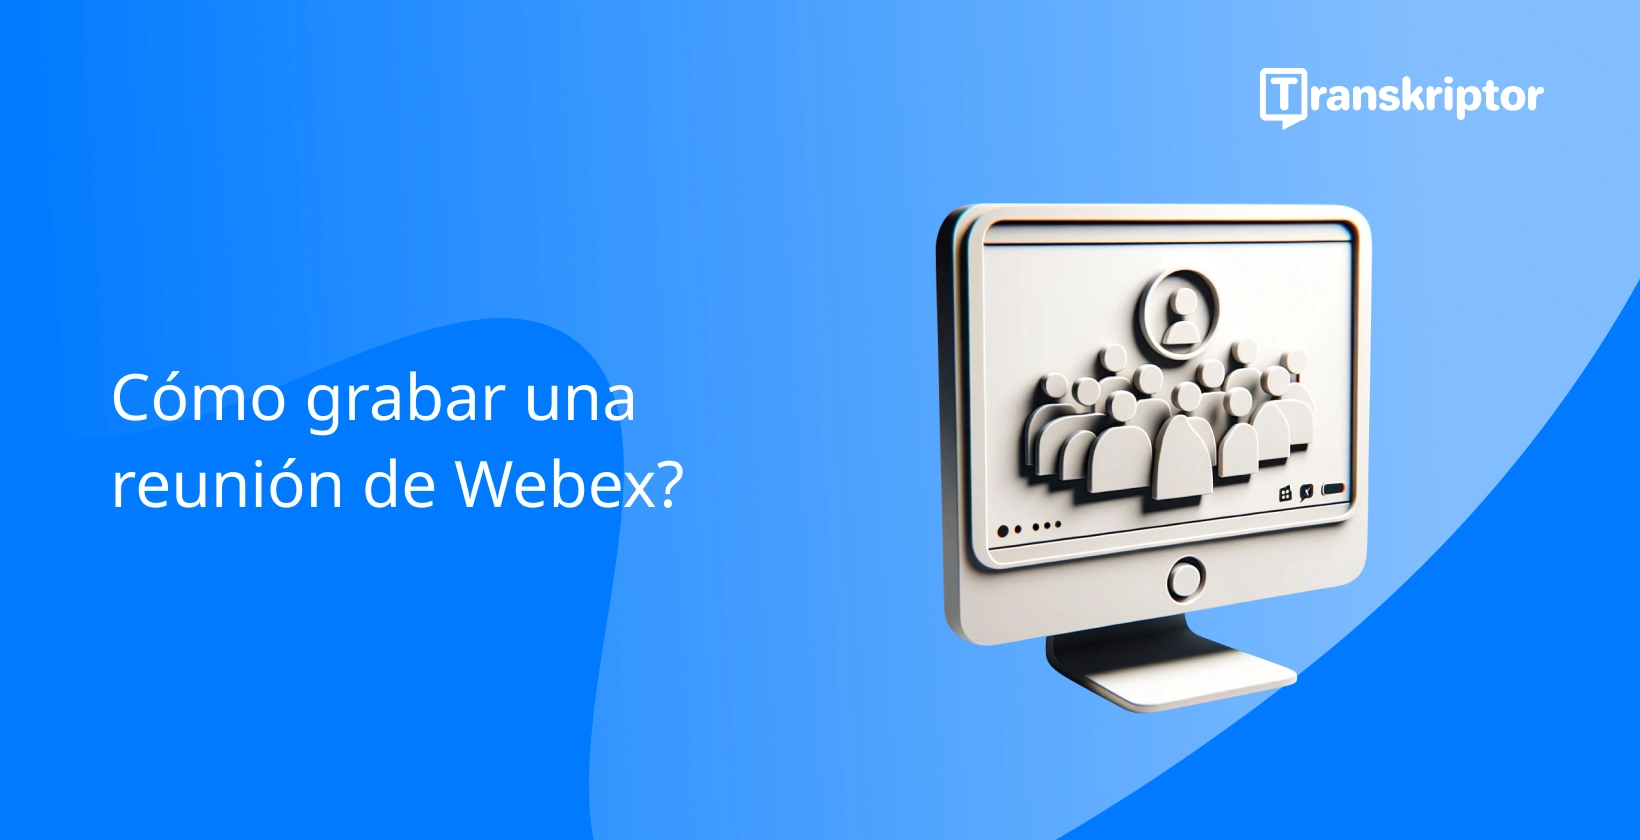 Grabación de reuniones de Webex con un botón de reproducción y una interfaz de reunión.